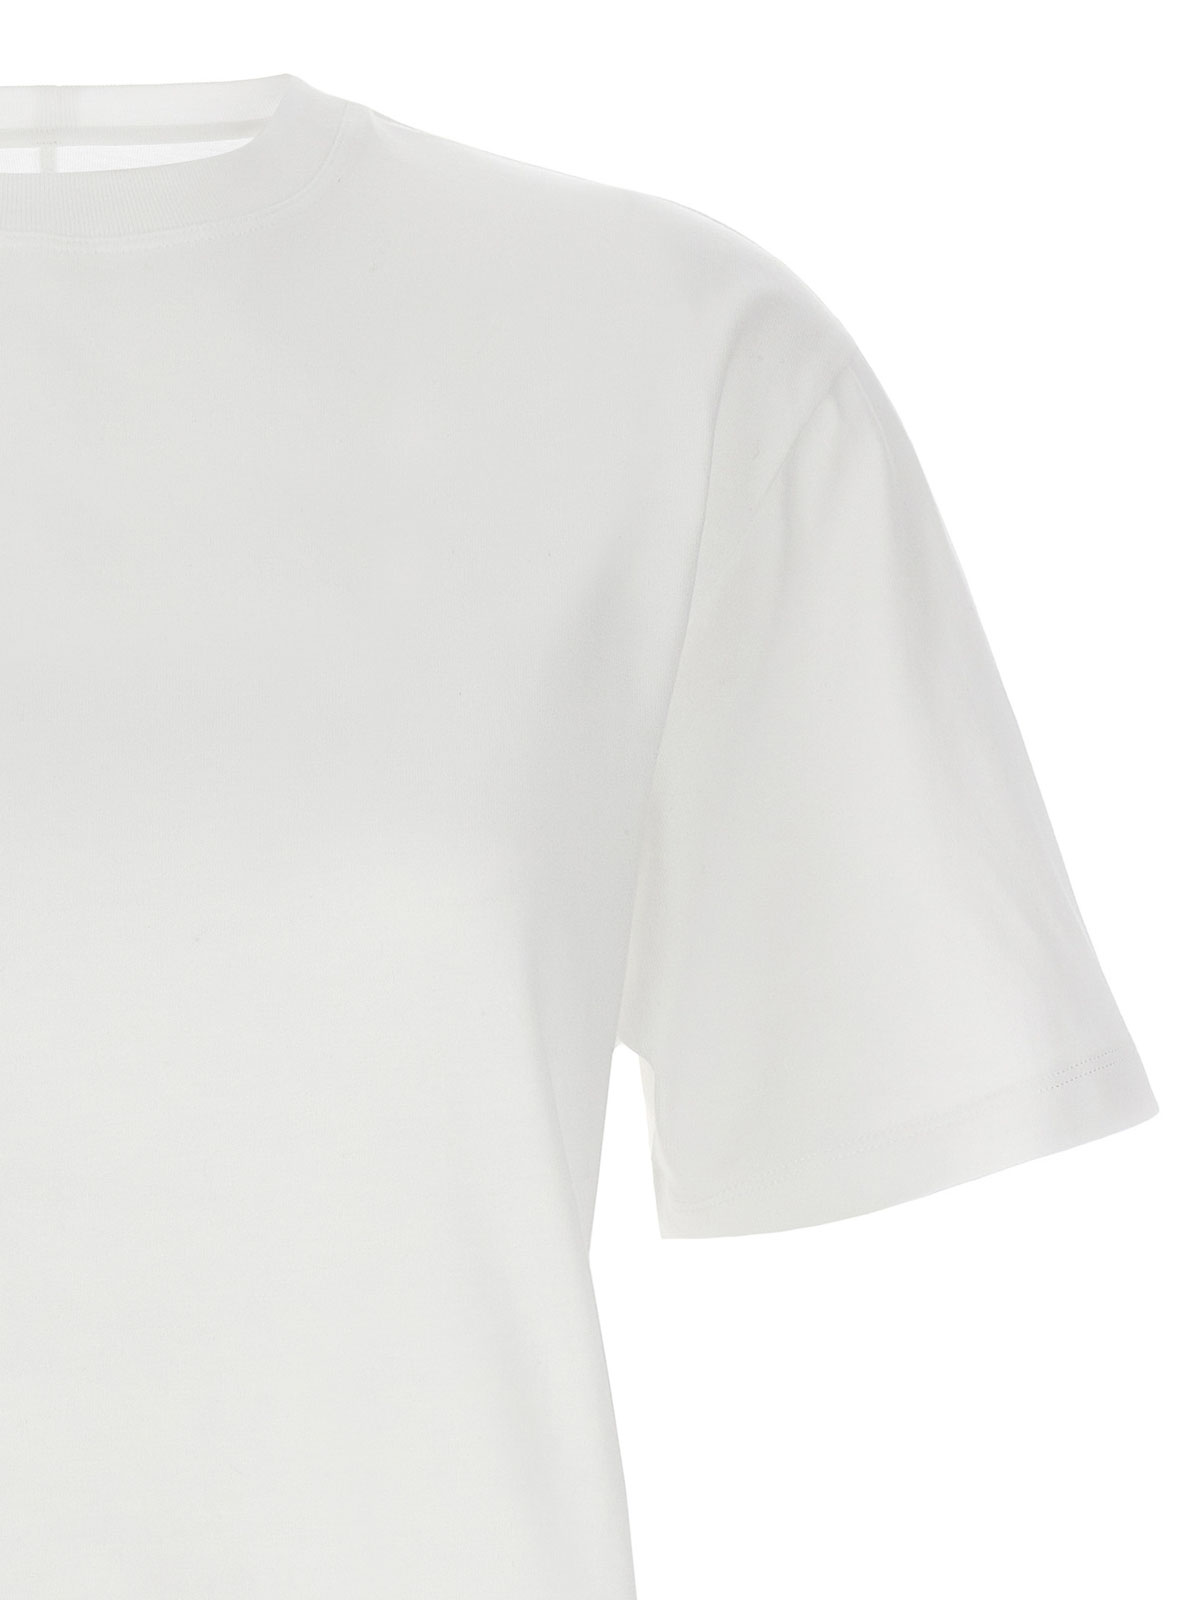 Shop Armarium Vittoria T-shirt In White